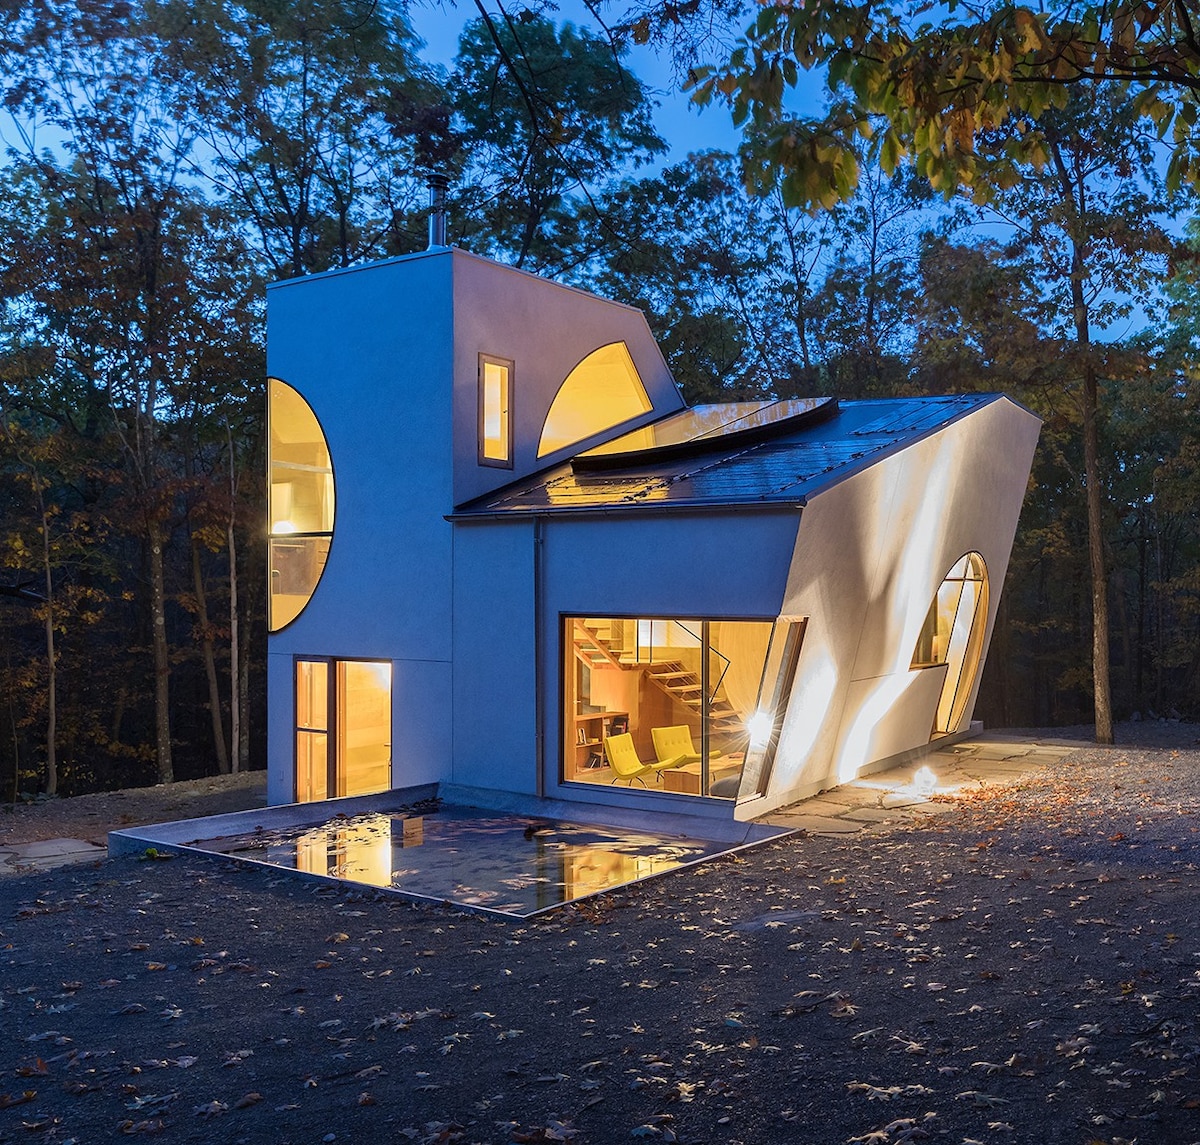 Es el atardecer y se muestra una casa blanca y moderna, diseñada por Steven Holl, que se ilumina con luces cálidas desde el interior.